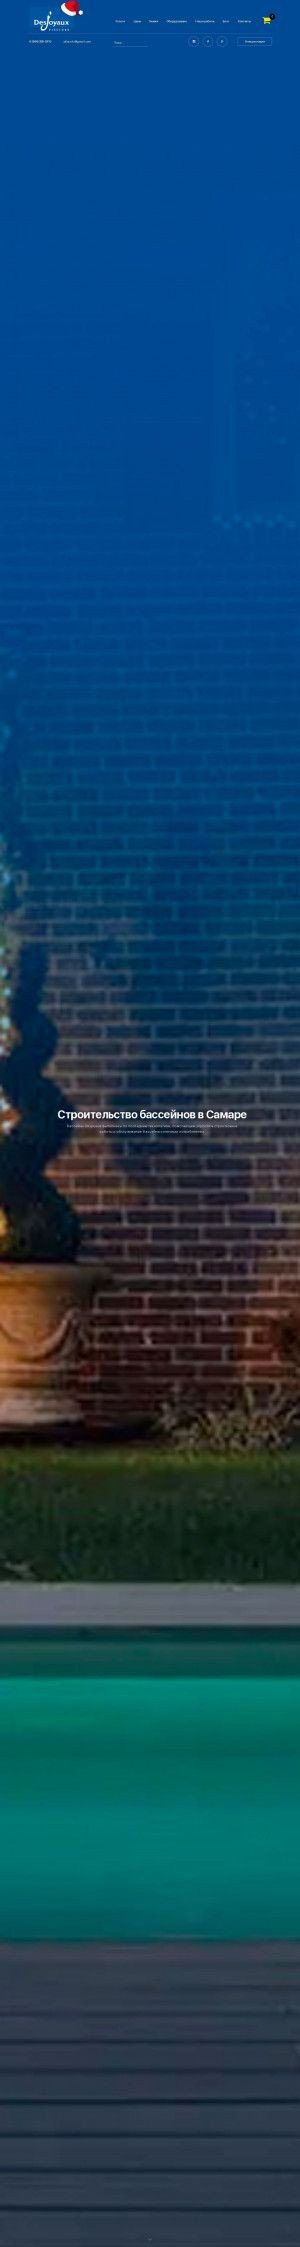 Предпросмотр для www.jdpool.ru — Дежуайо